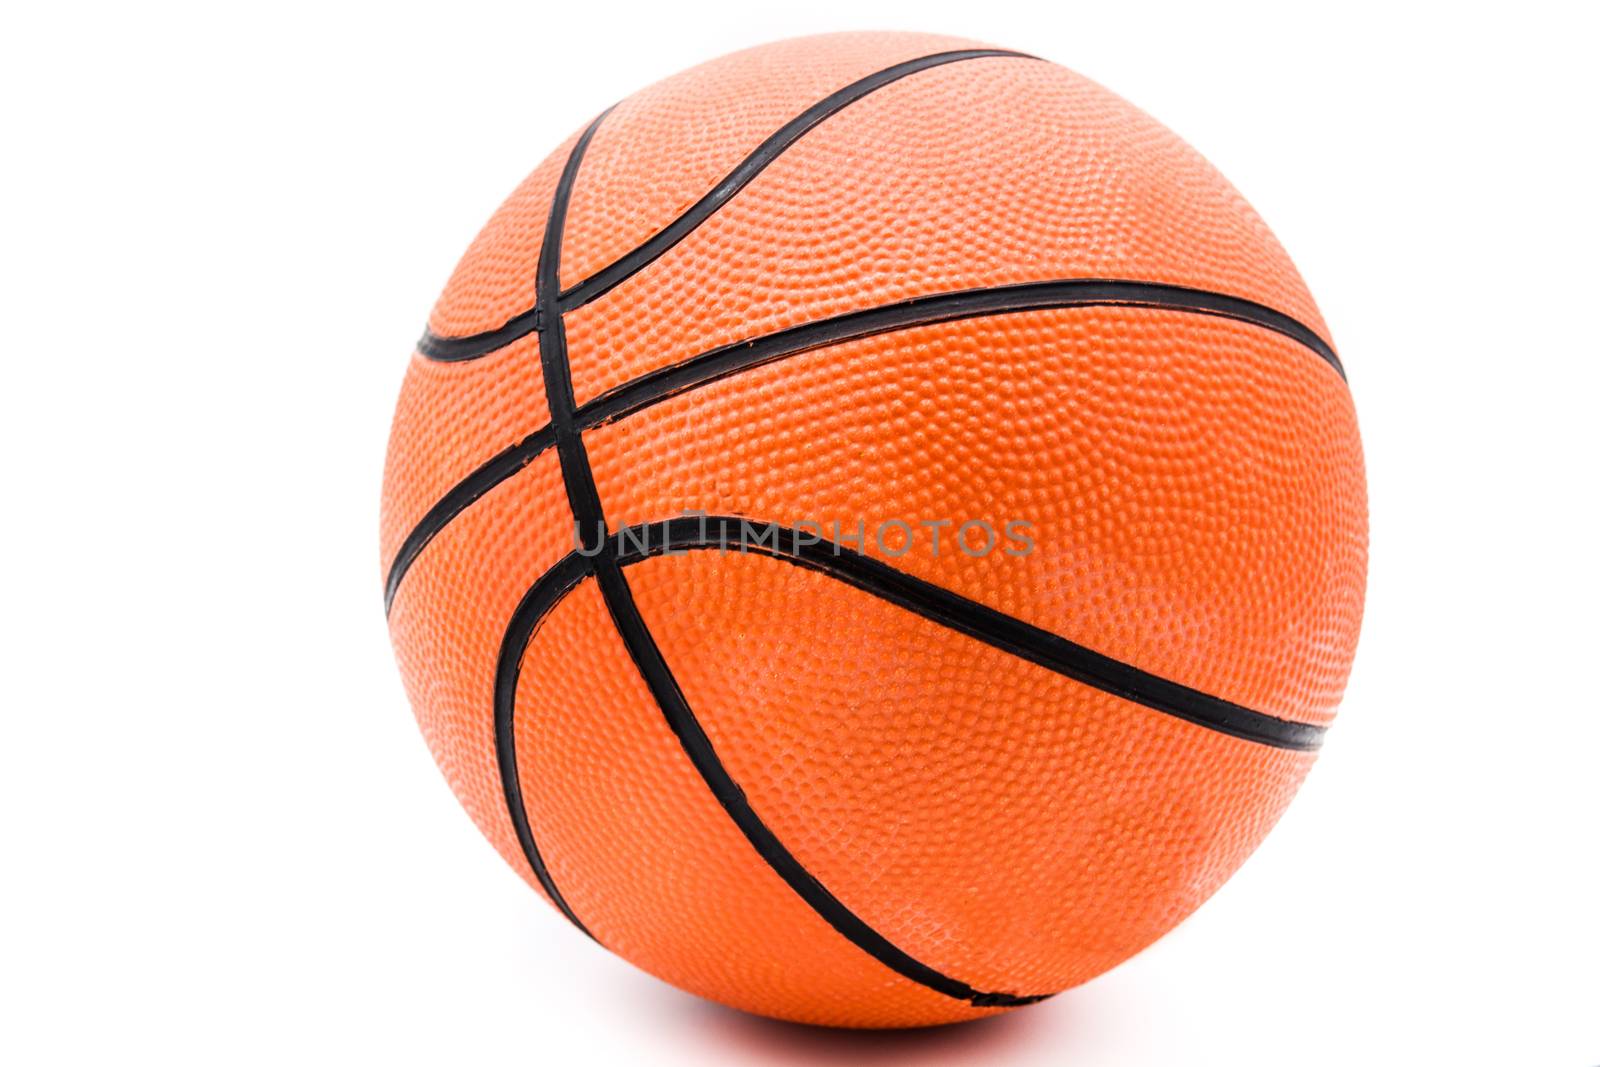 Basketball isolated on white background.